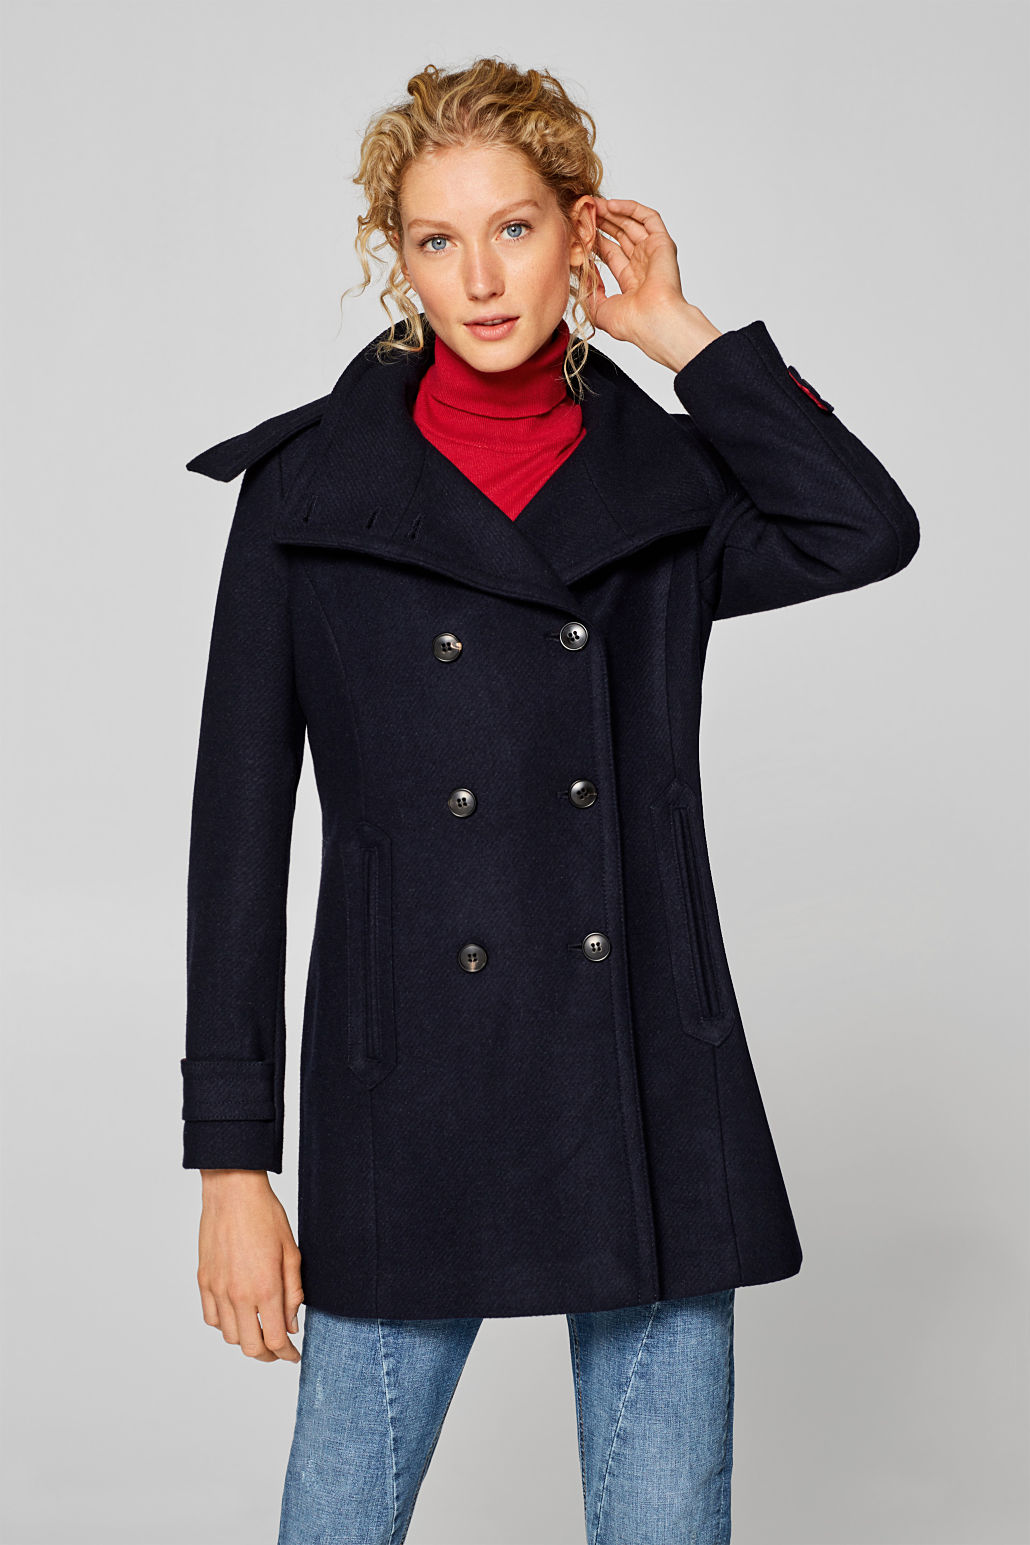 manteau femme cintré avec capuche